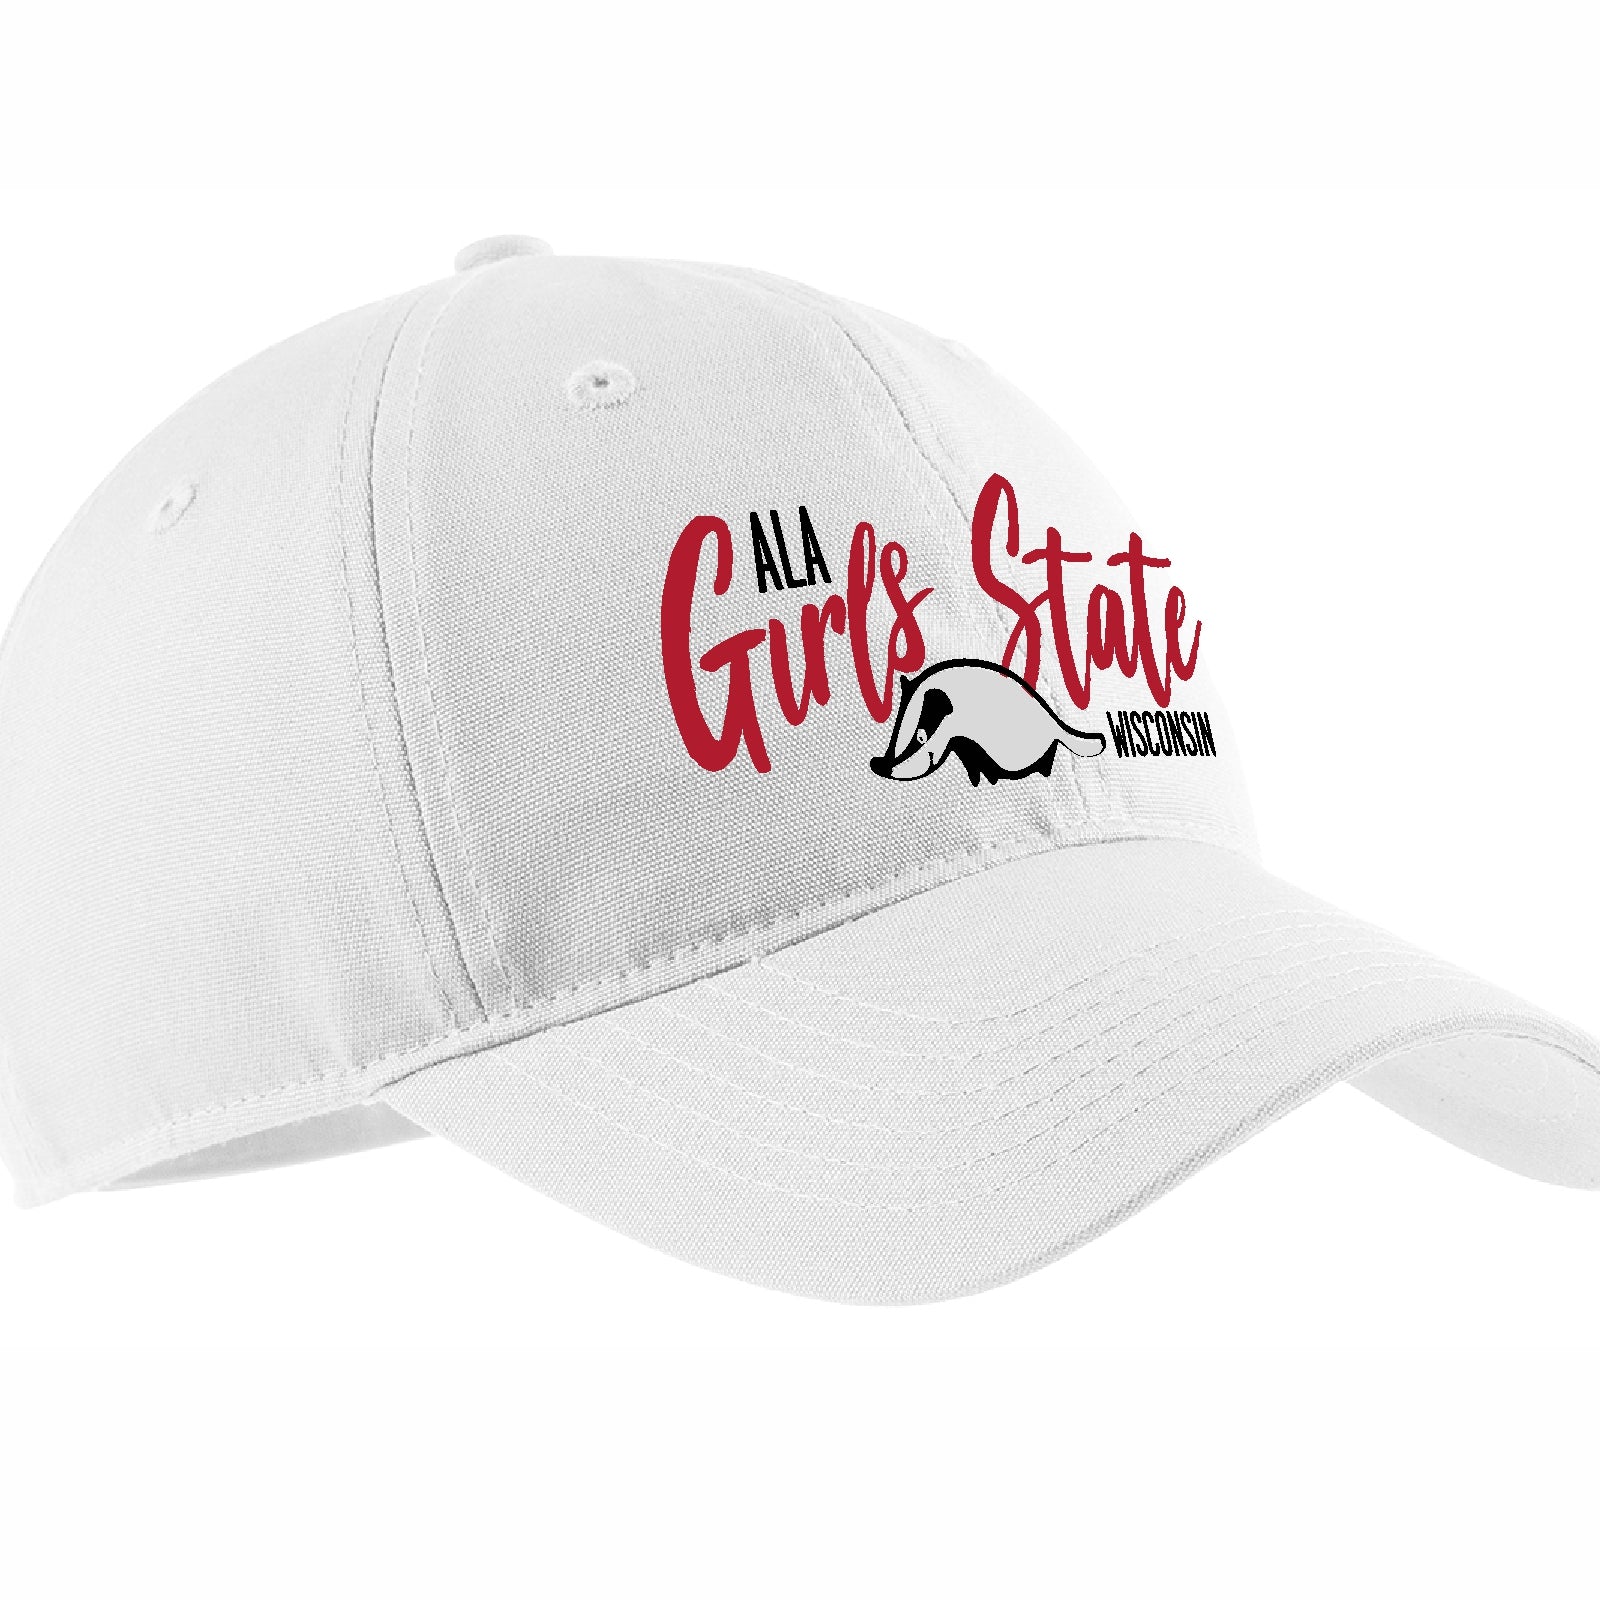 ALA Badger Girls State White Dad Hat